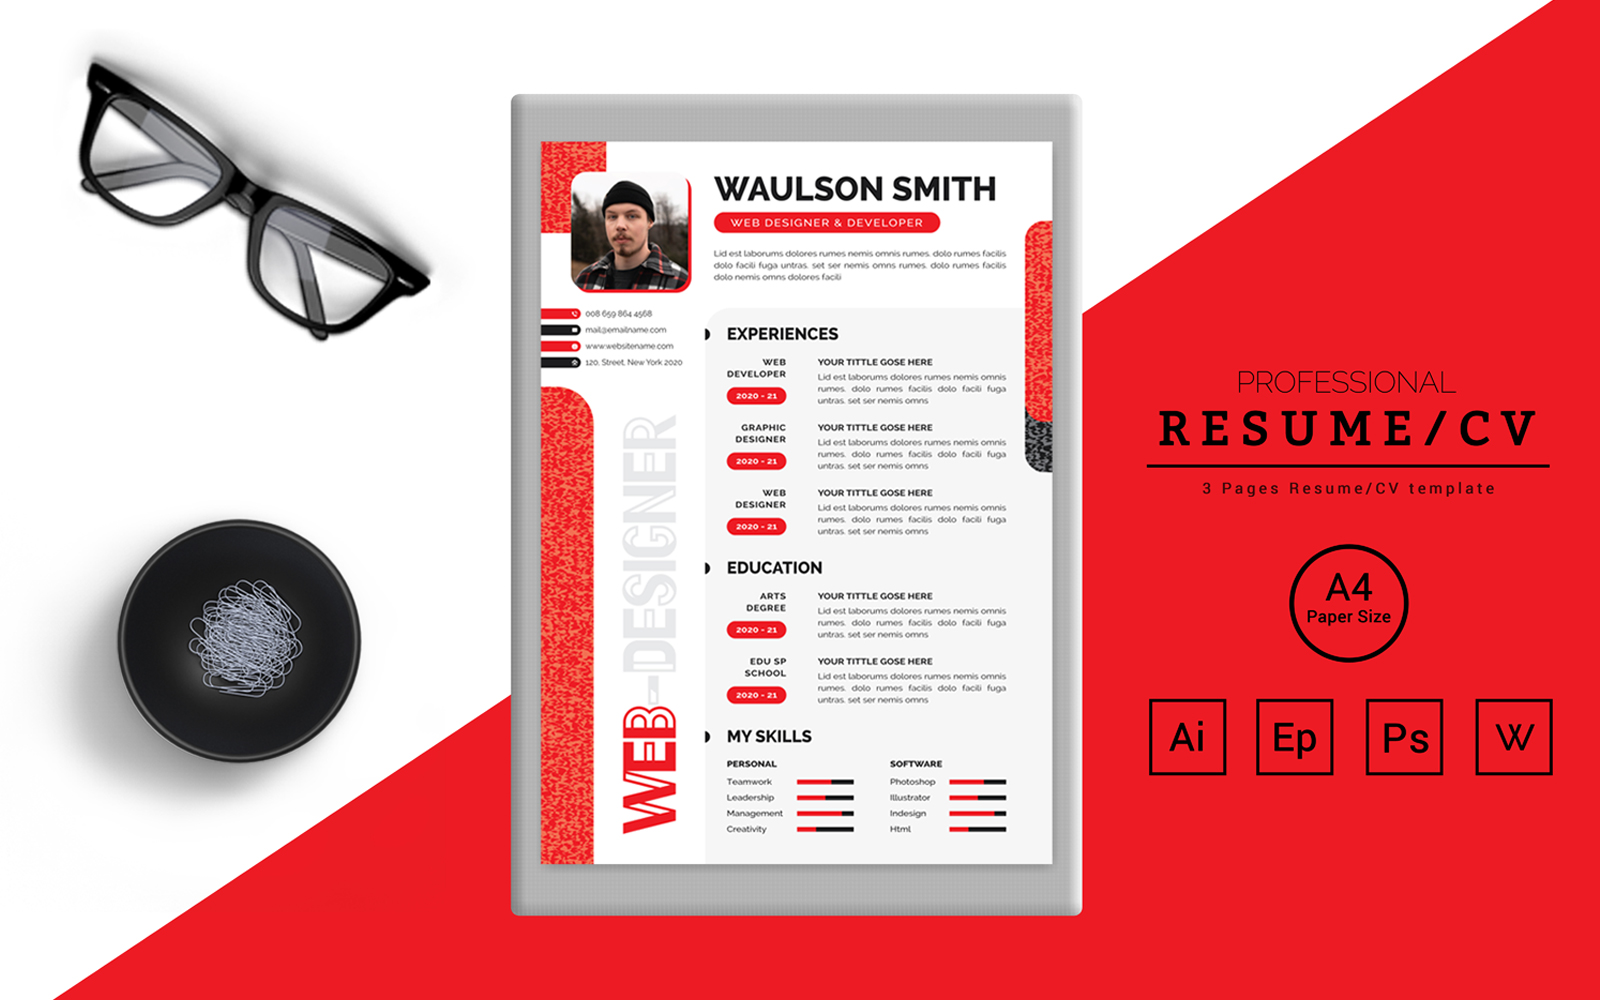 Waulson Smith – CV Design for a Web Designer Printable Resume Templates